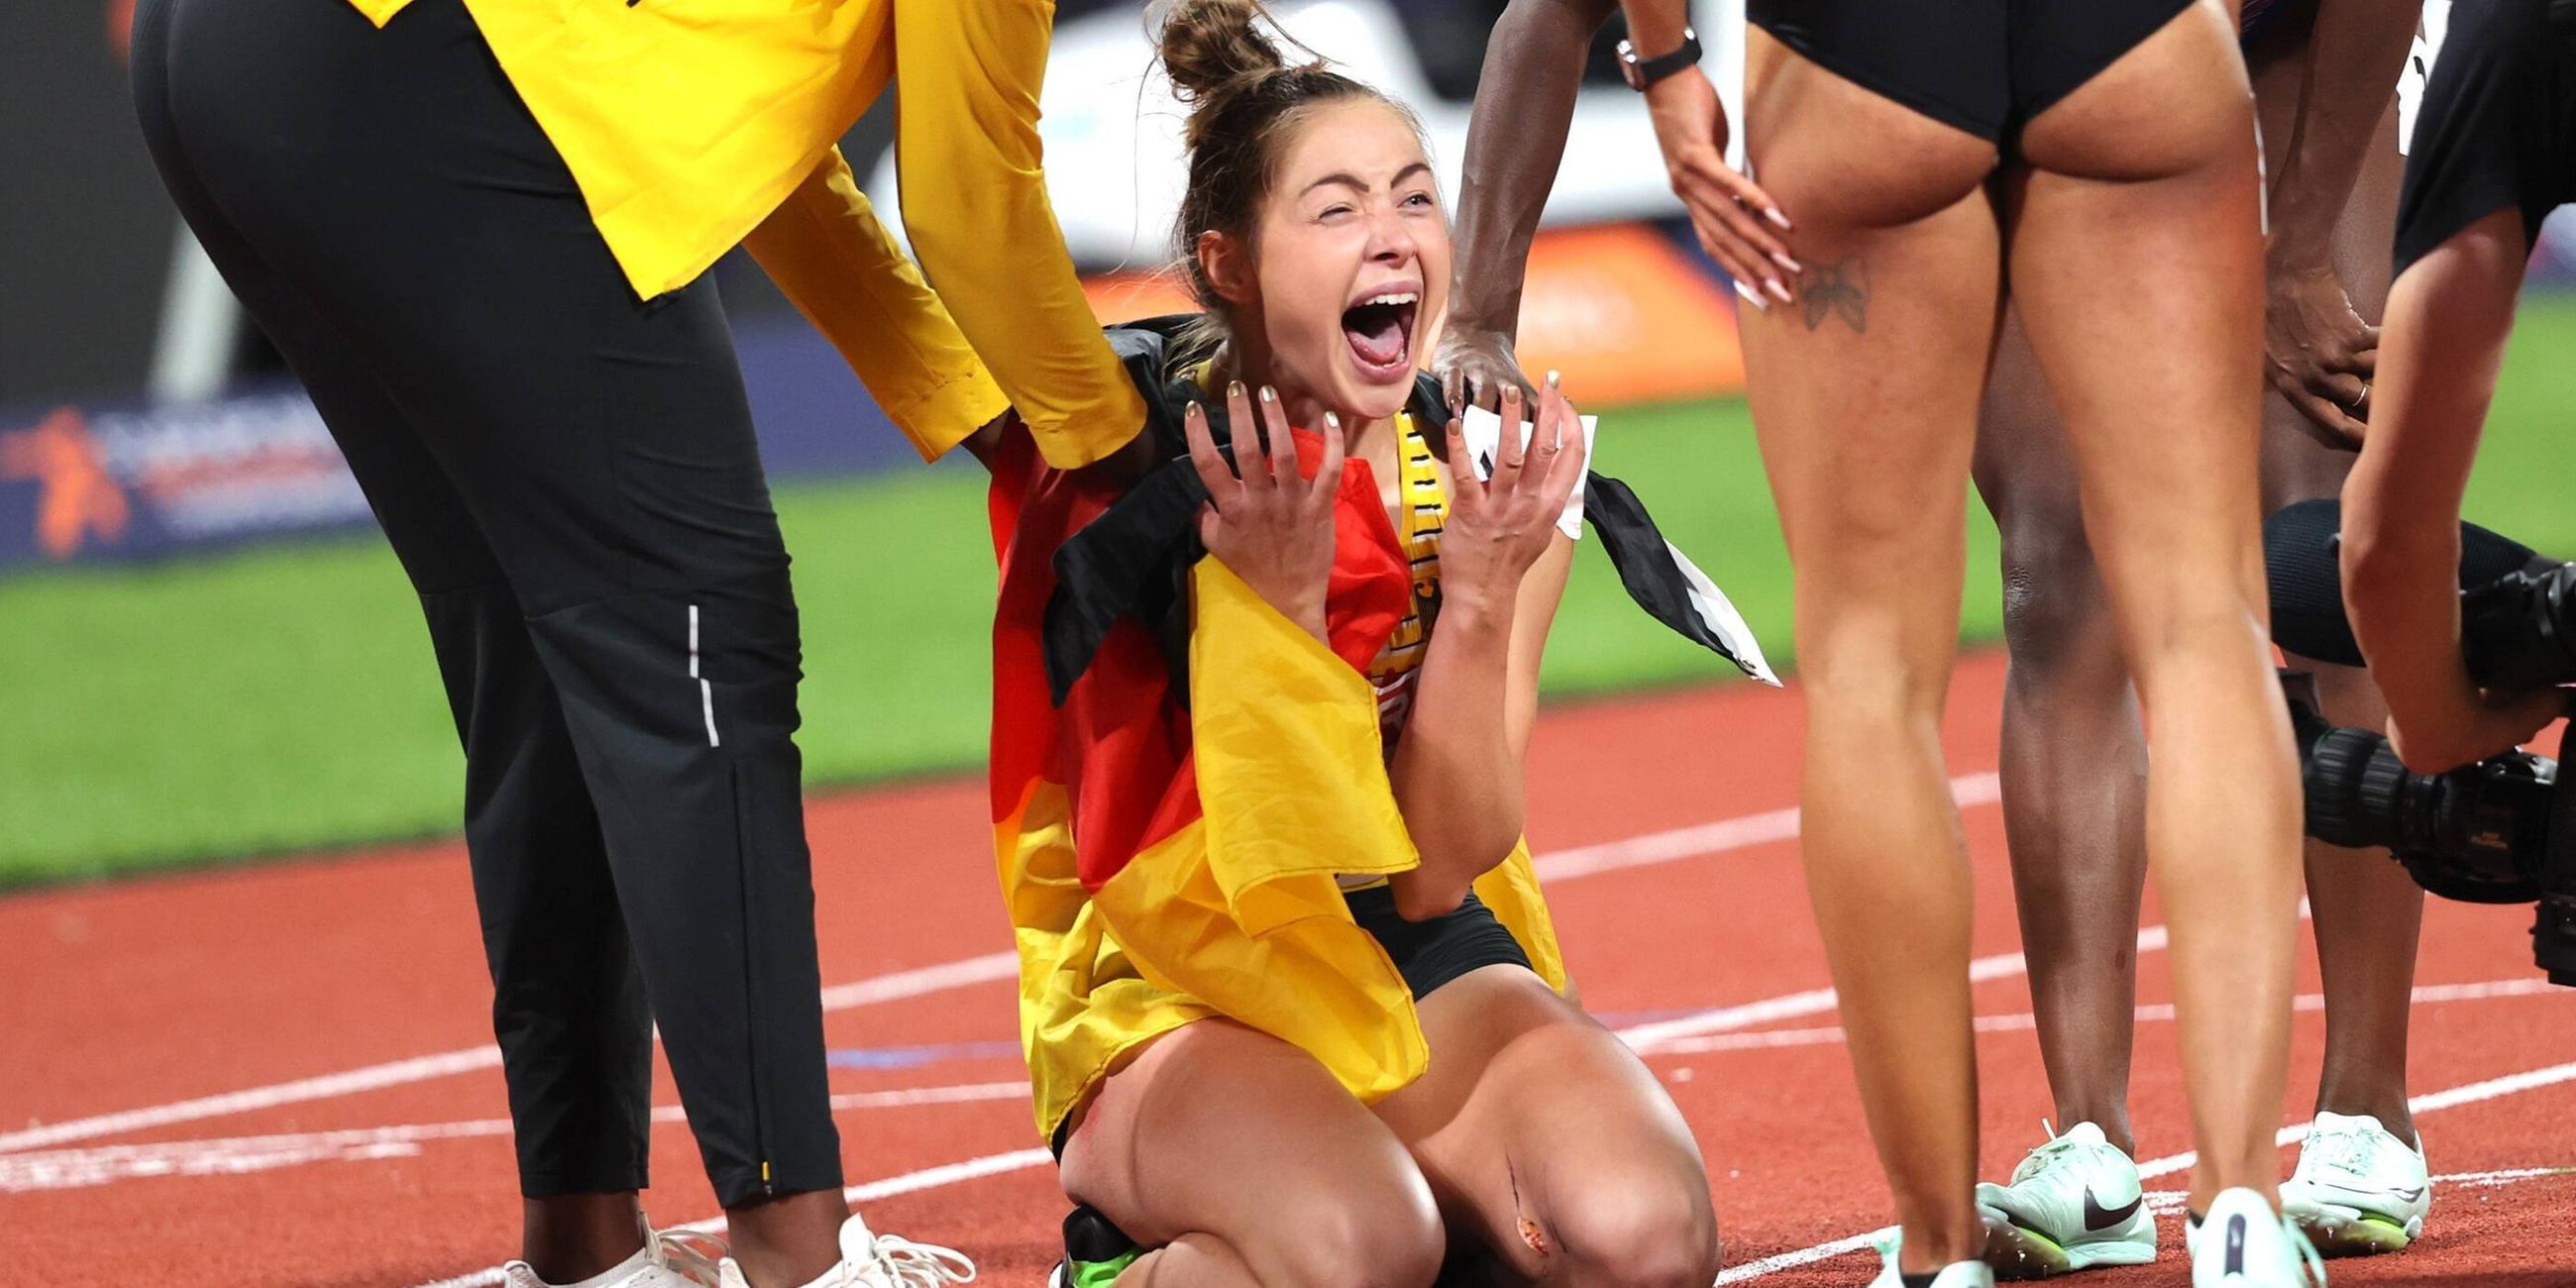 Bilder des Jahres: Gina Lückenkemper gewinnt Gold bei den European Championchips